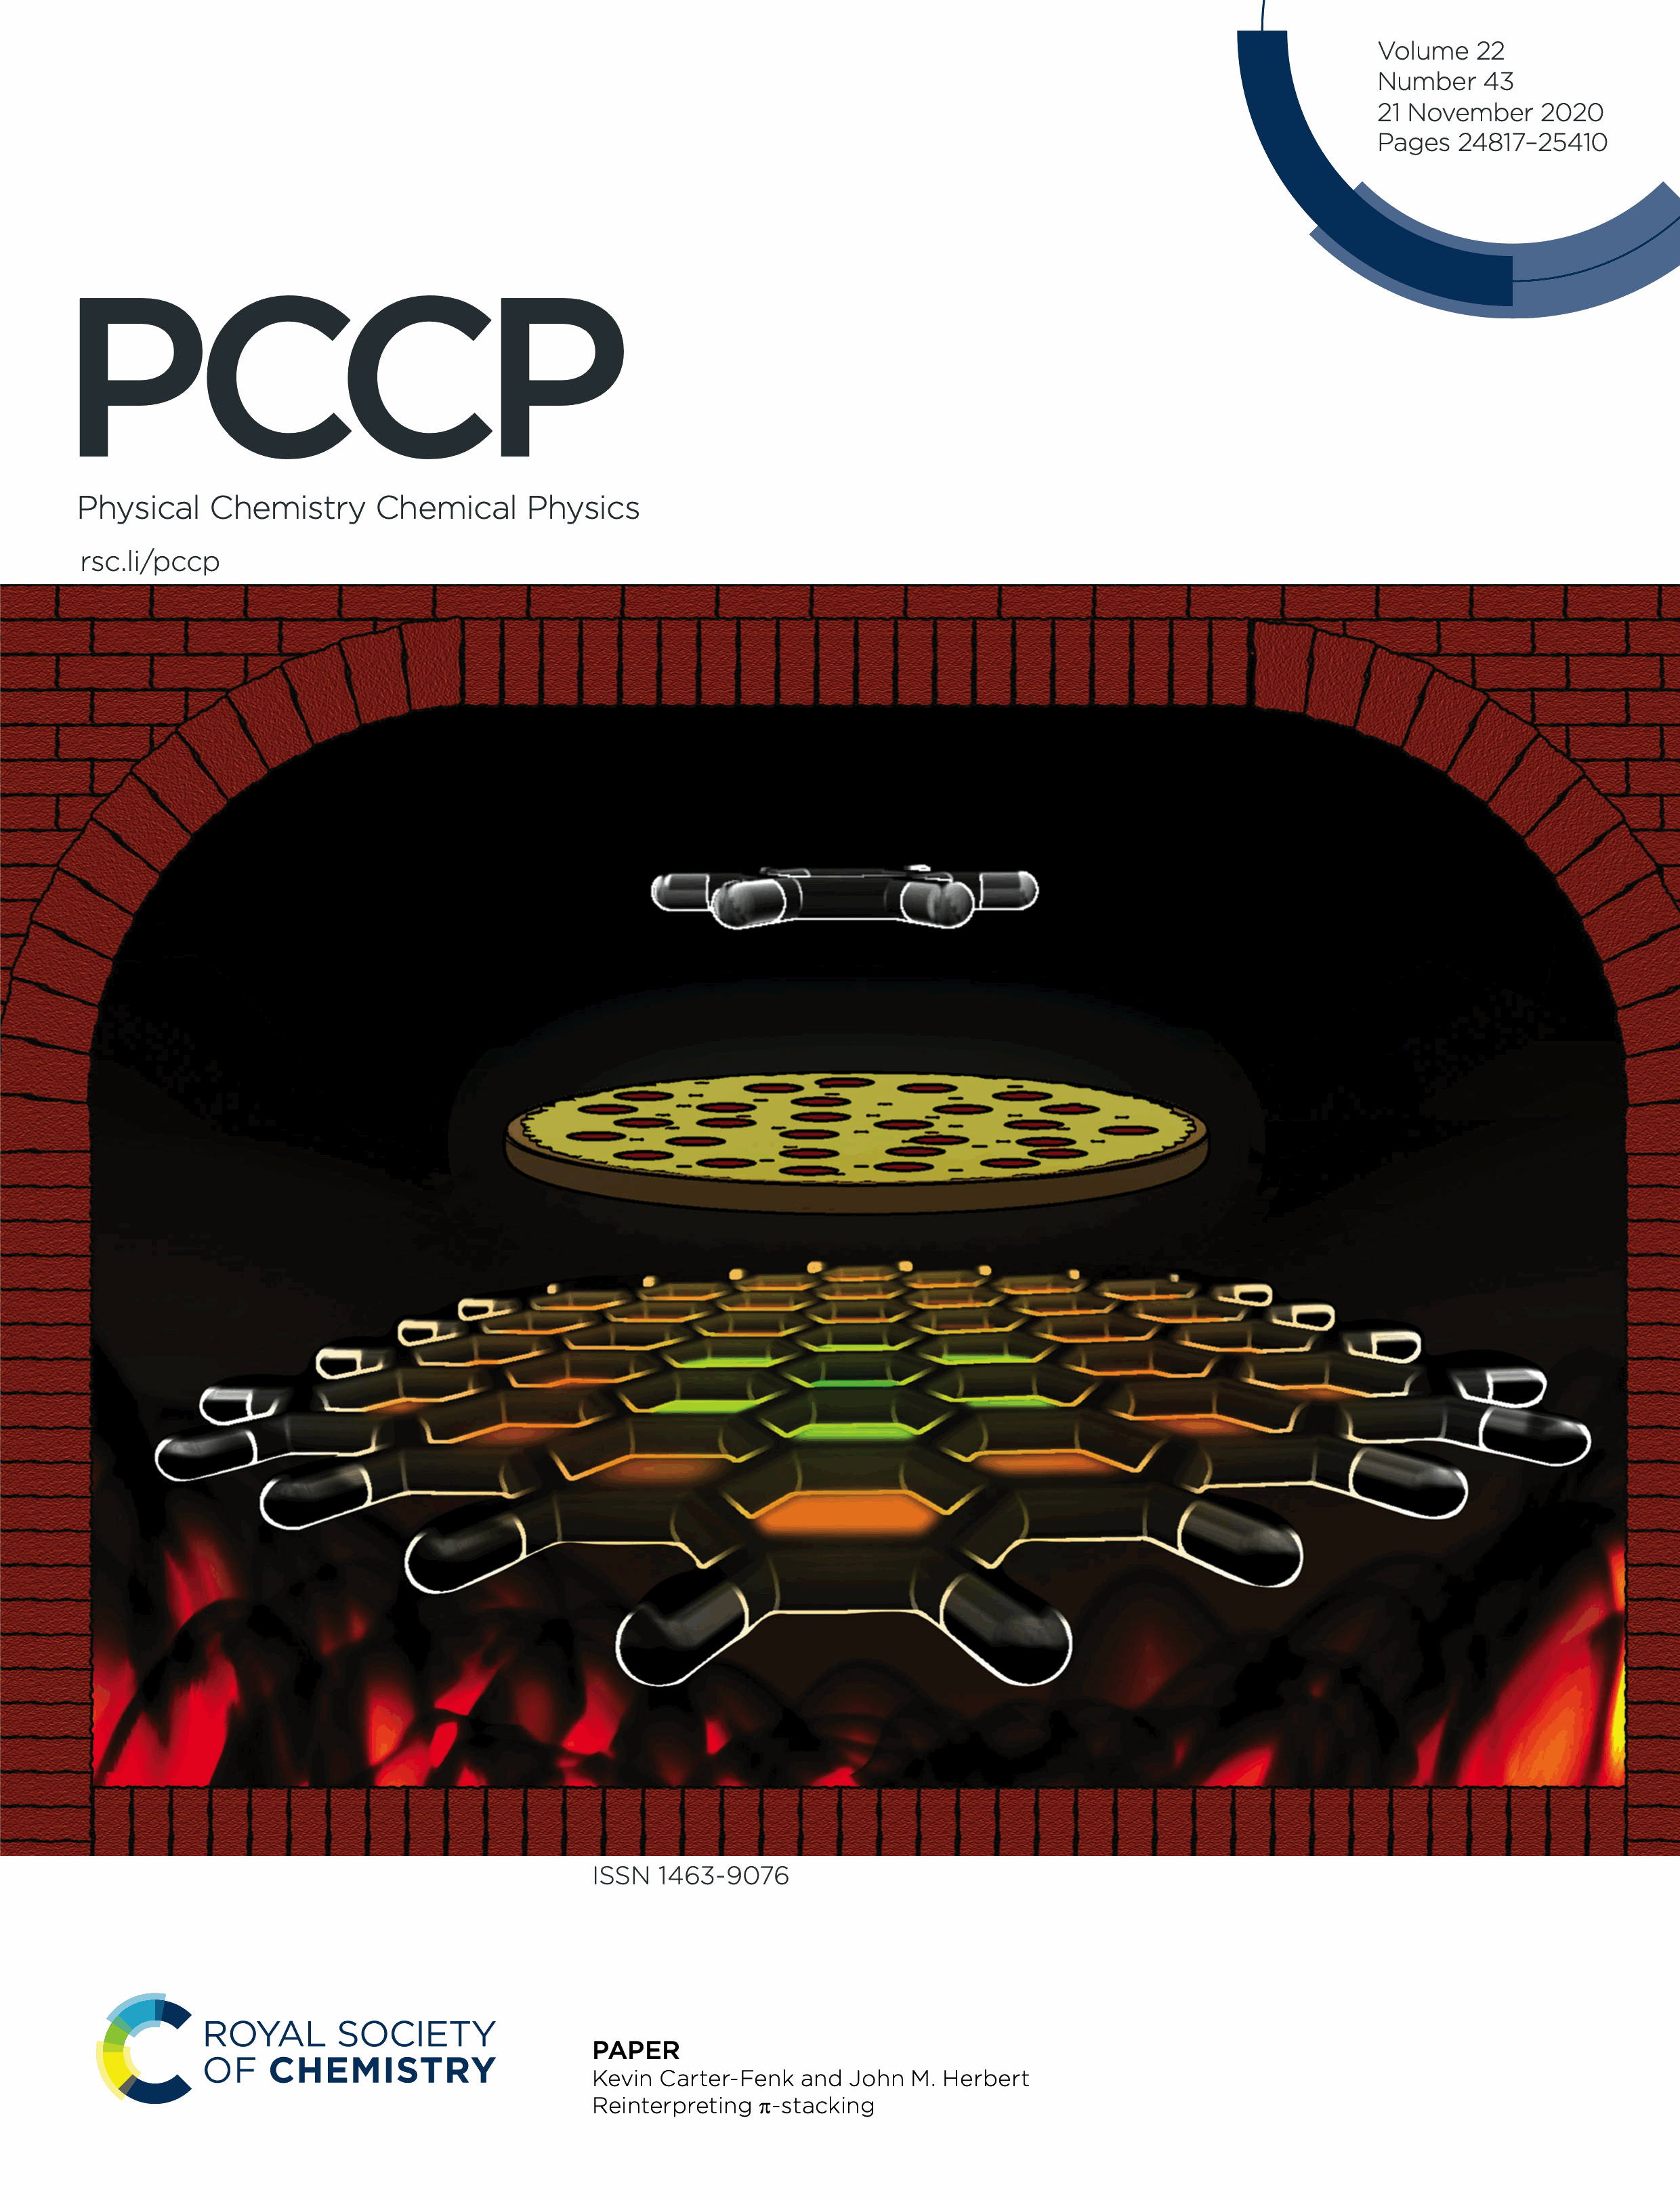 PCCP cover artwork